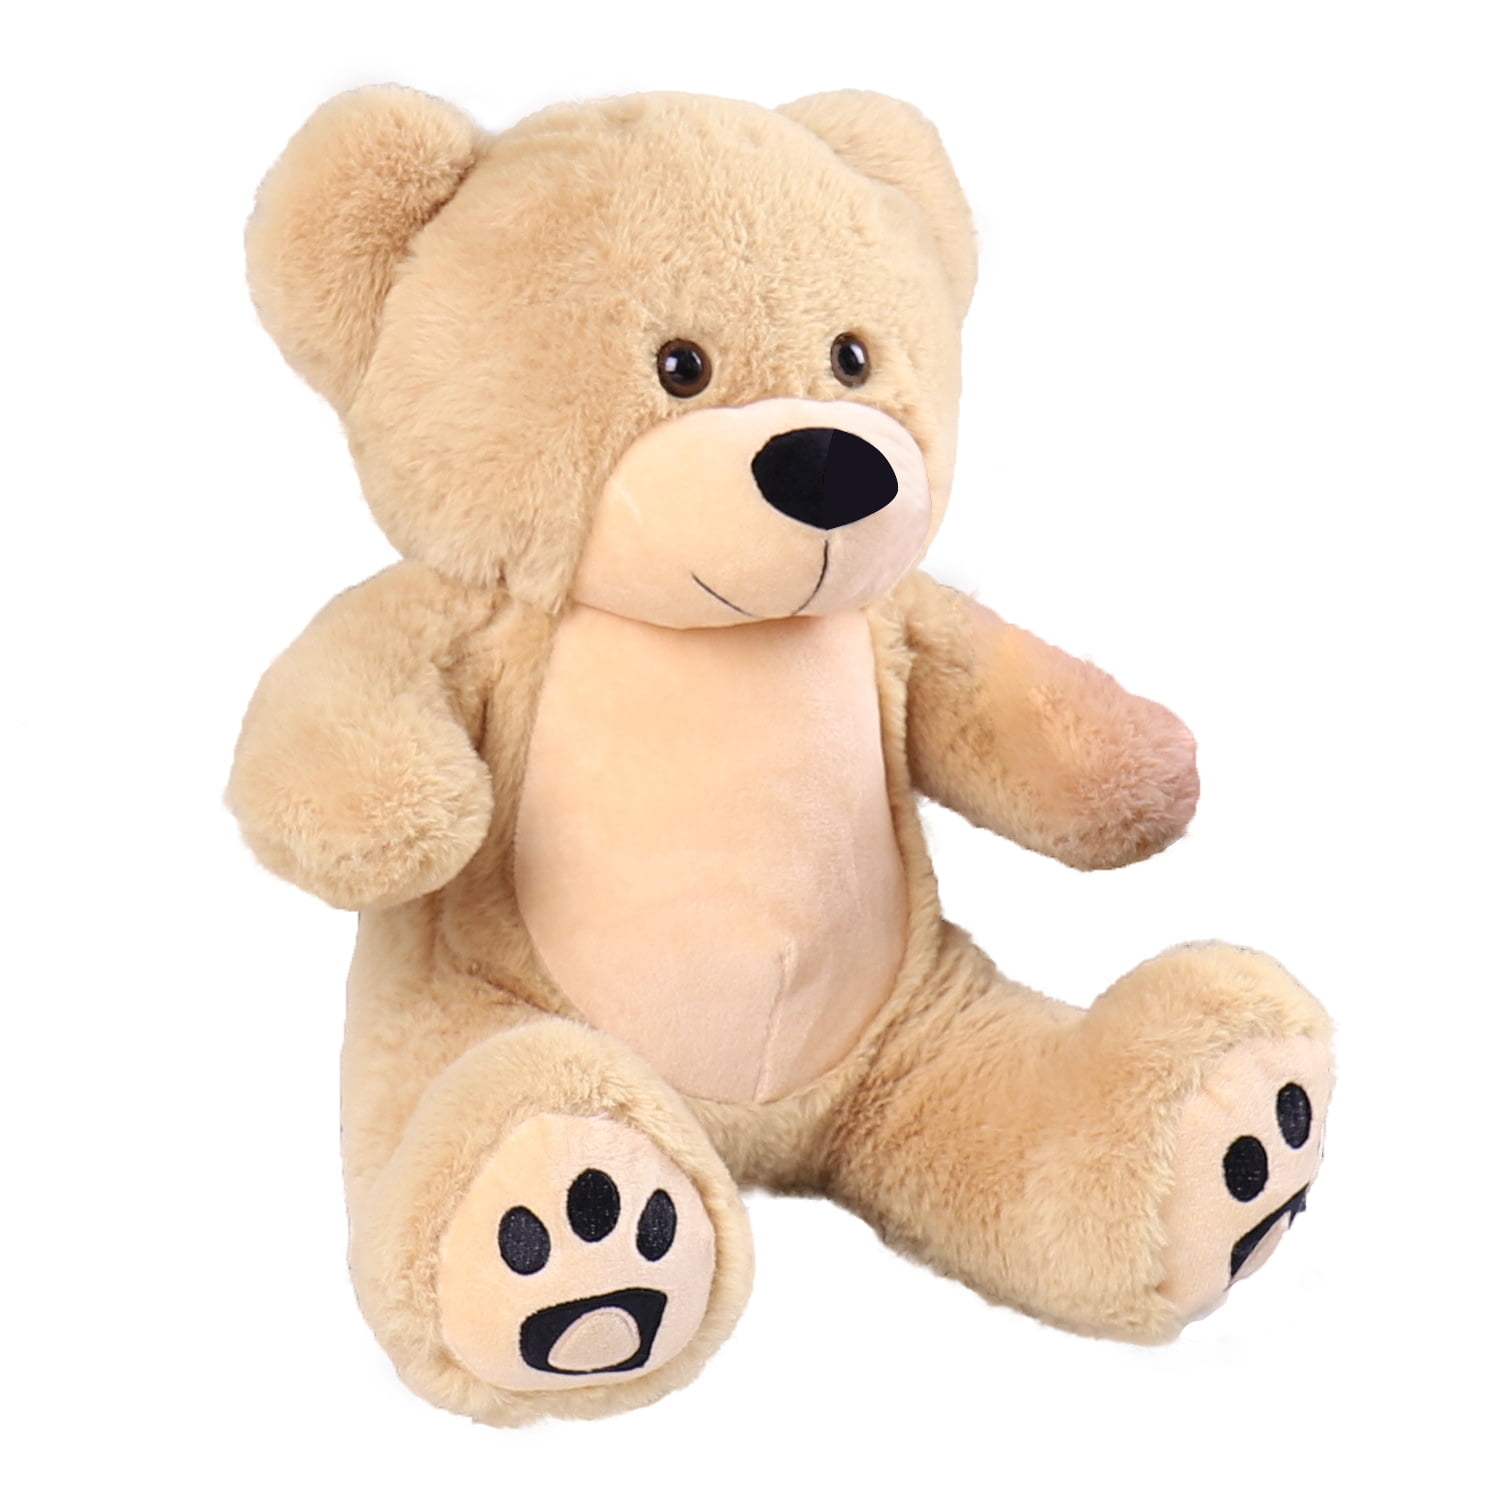 NEW Gift Present Birthday Xmas Cute And Cuddly Teddy Bear NOAH 